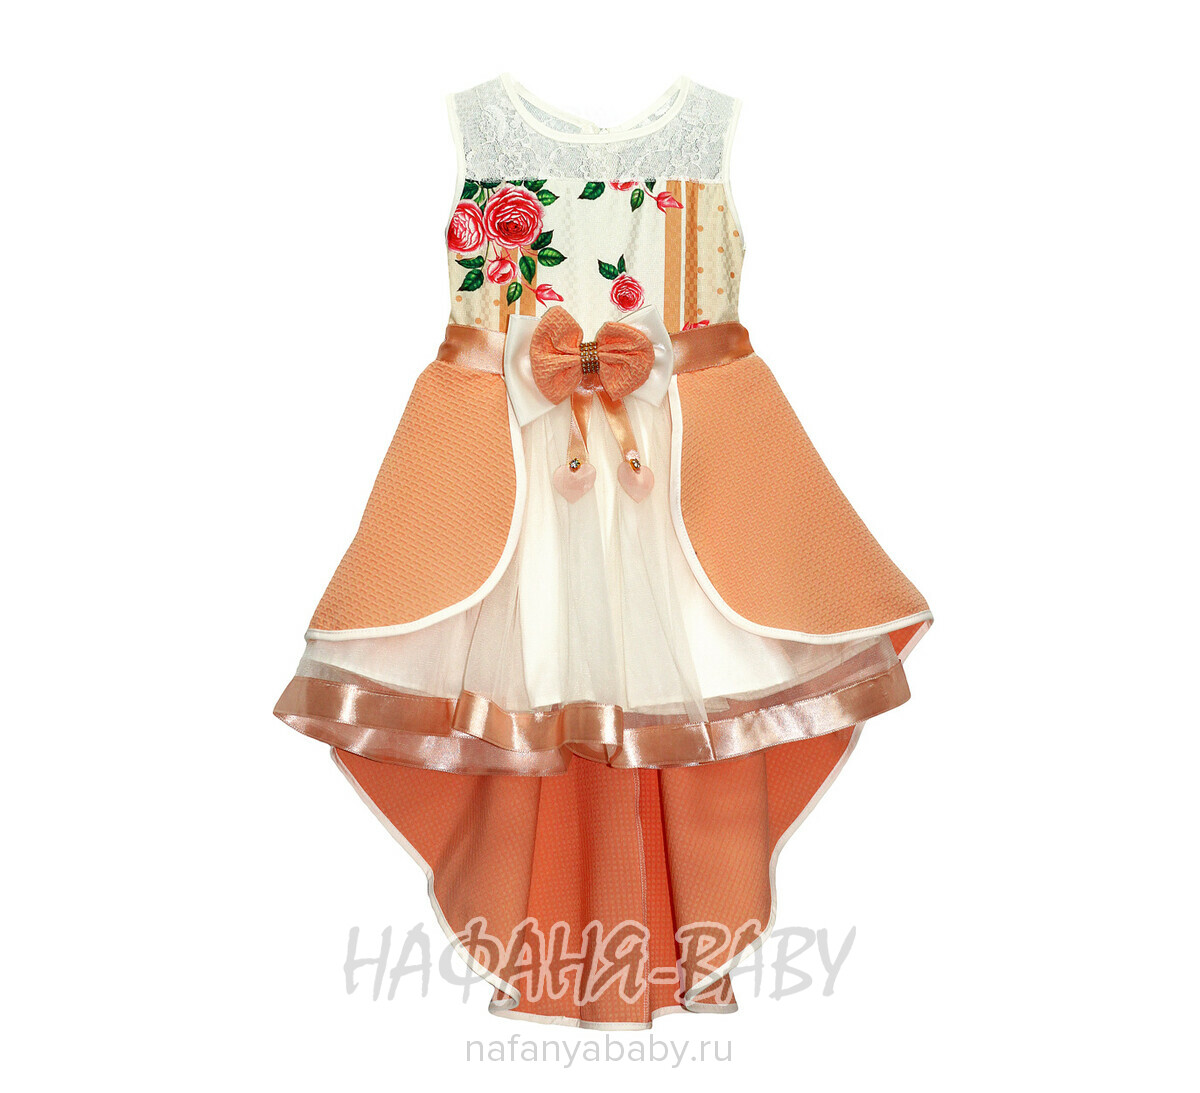 Детское нарядное платье Miss GOLDEN, купить в интернет магазине Нафаня. арт: 201.